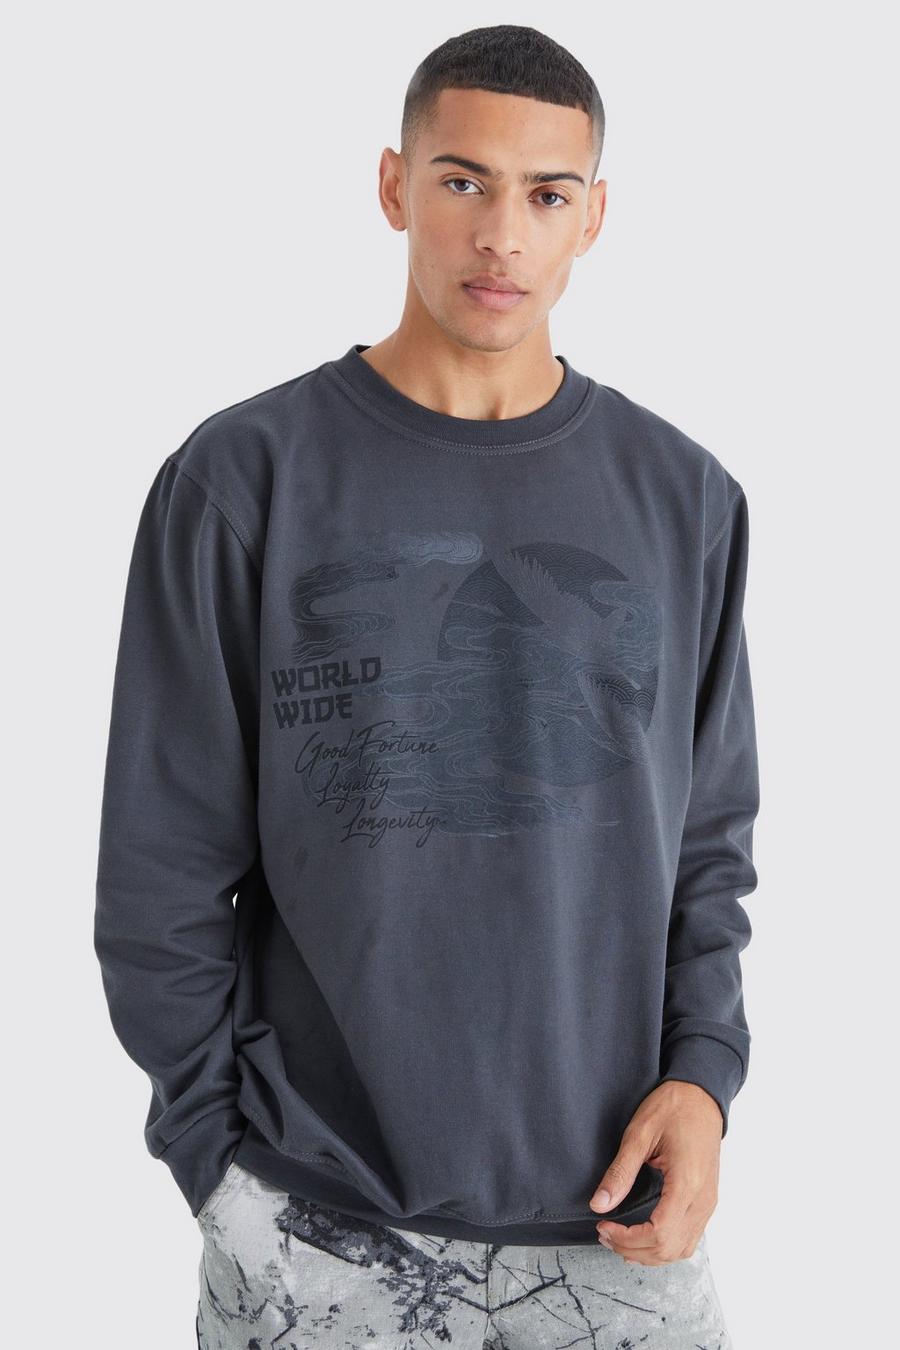 Charcoal grey Oversized Boxy Graphic Sweatshirt